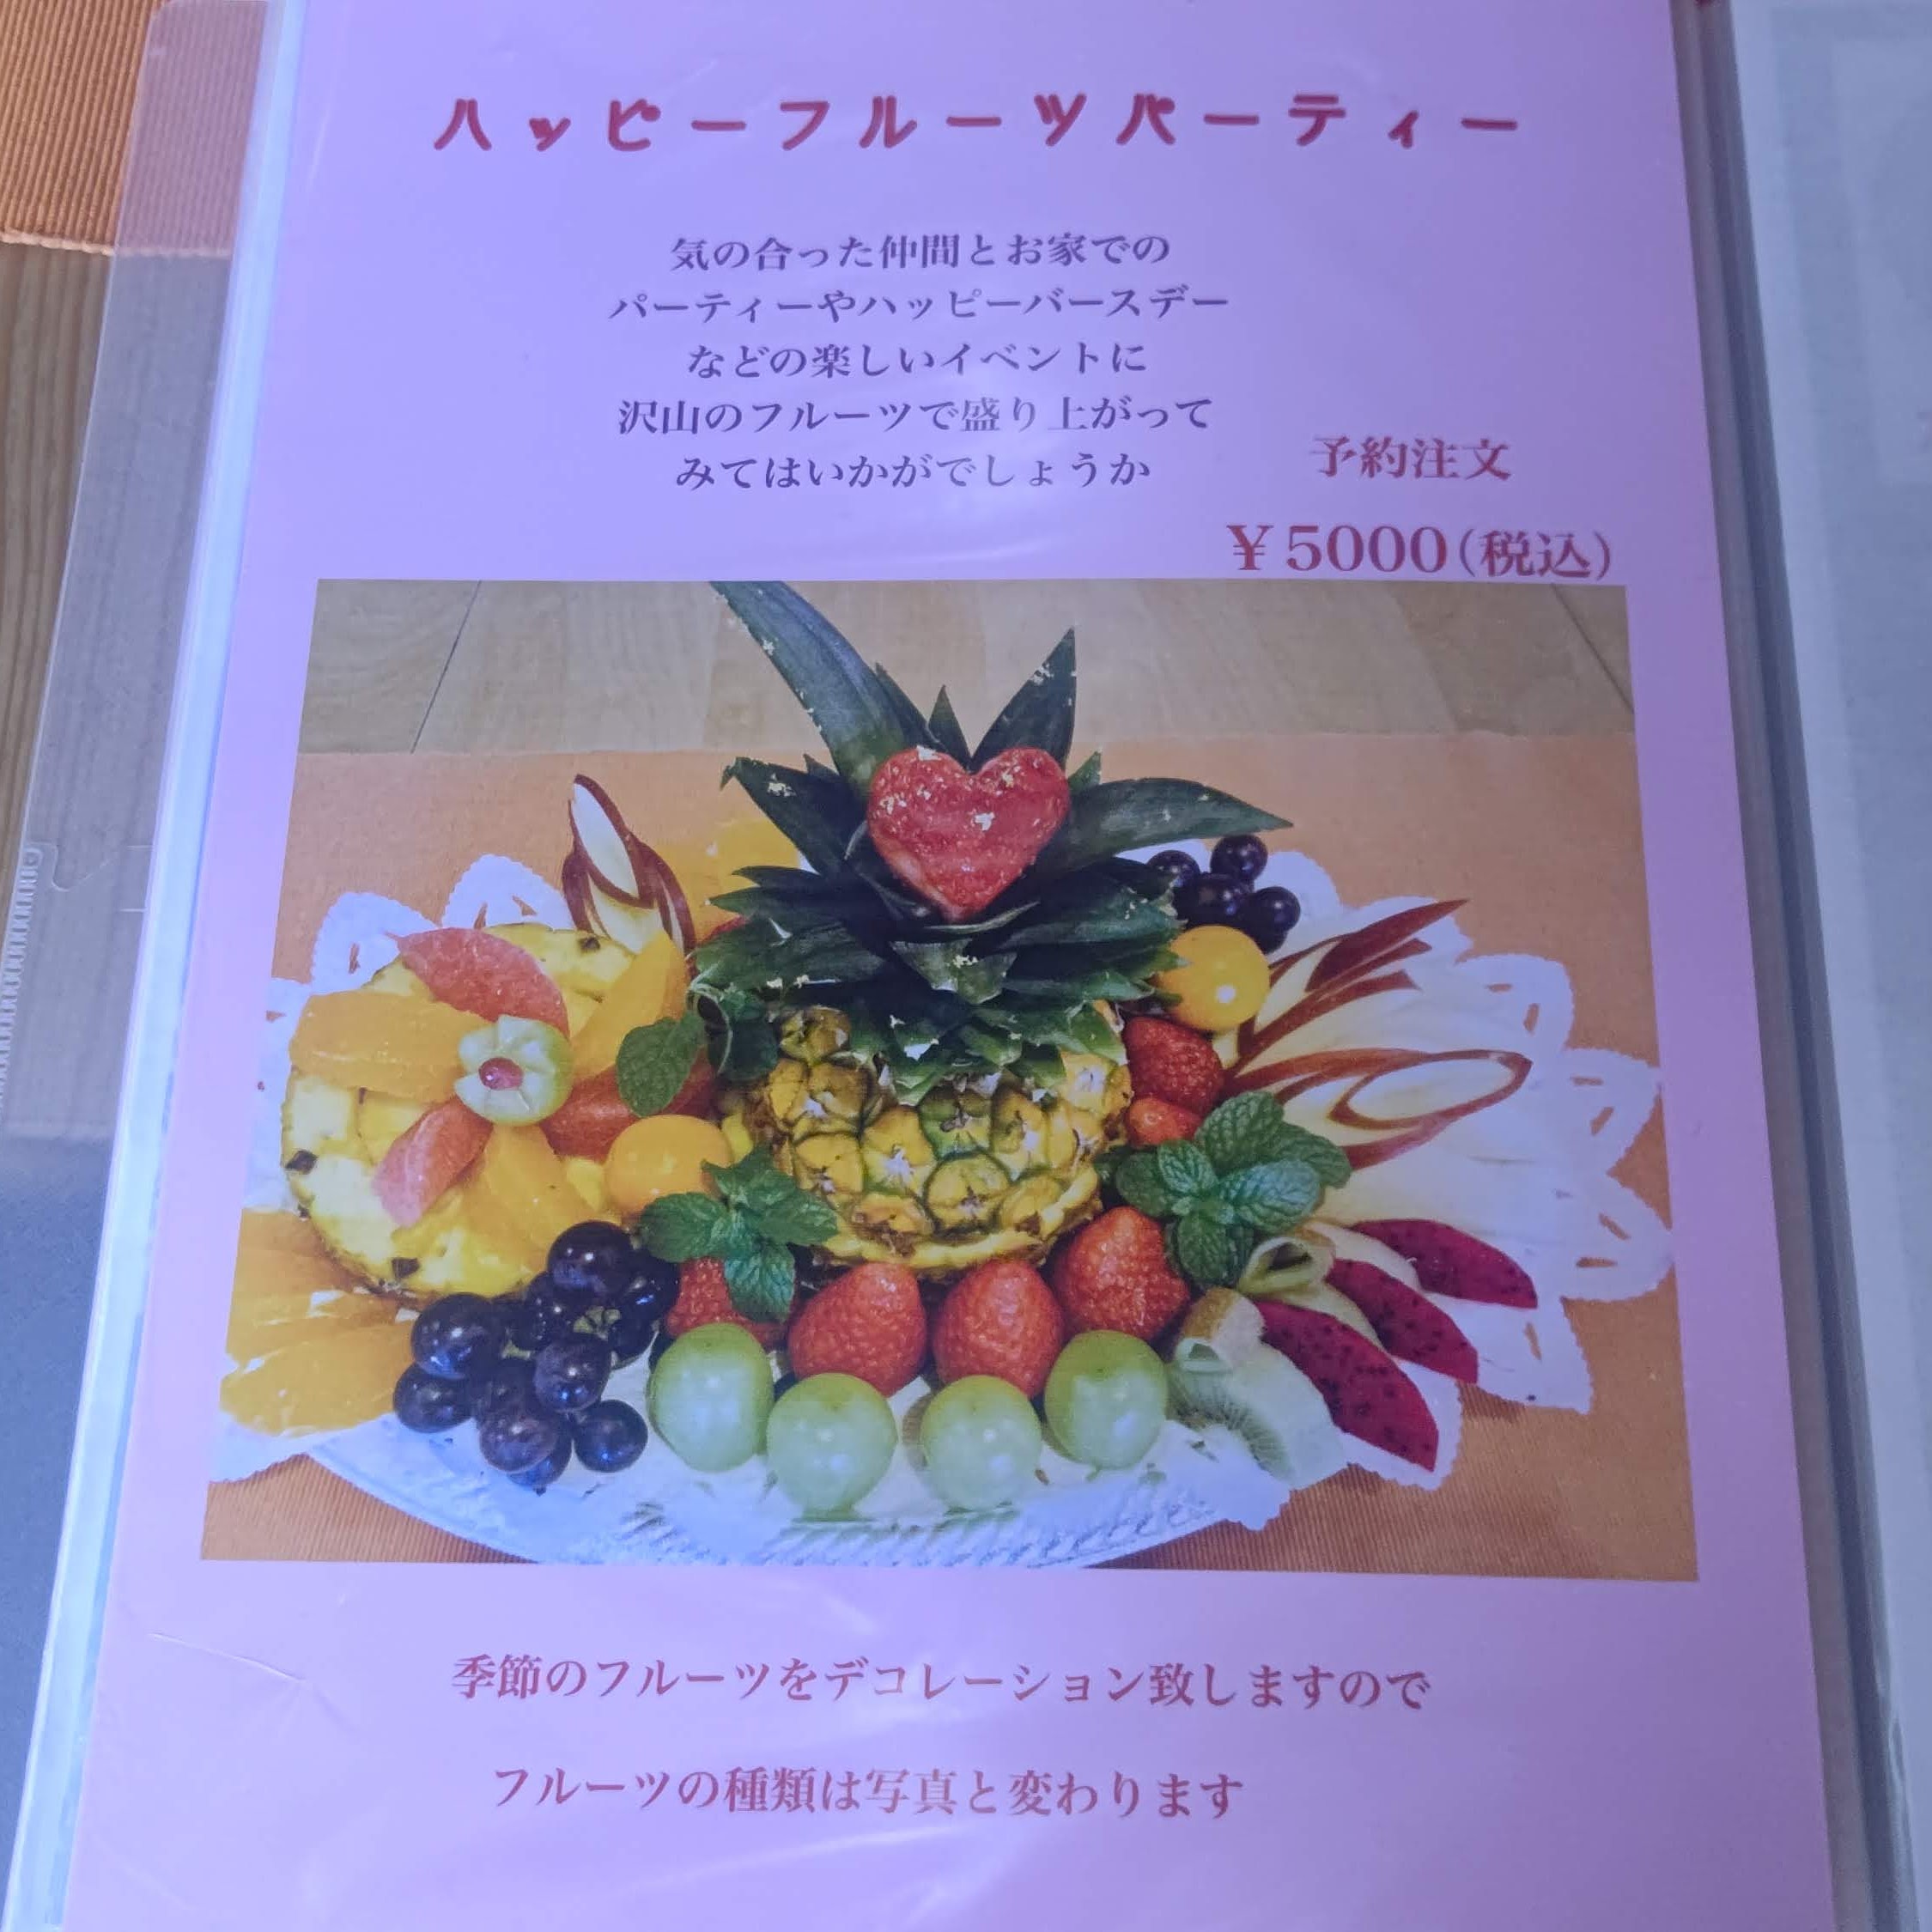 長野県佐久市 フルーツおばさんのカフェ 花水木 メニュー ハッピーフルーツパーティー